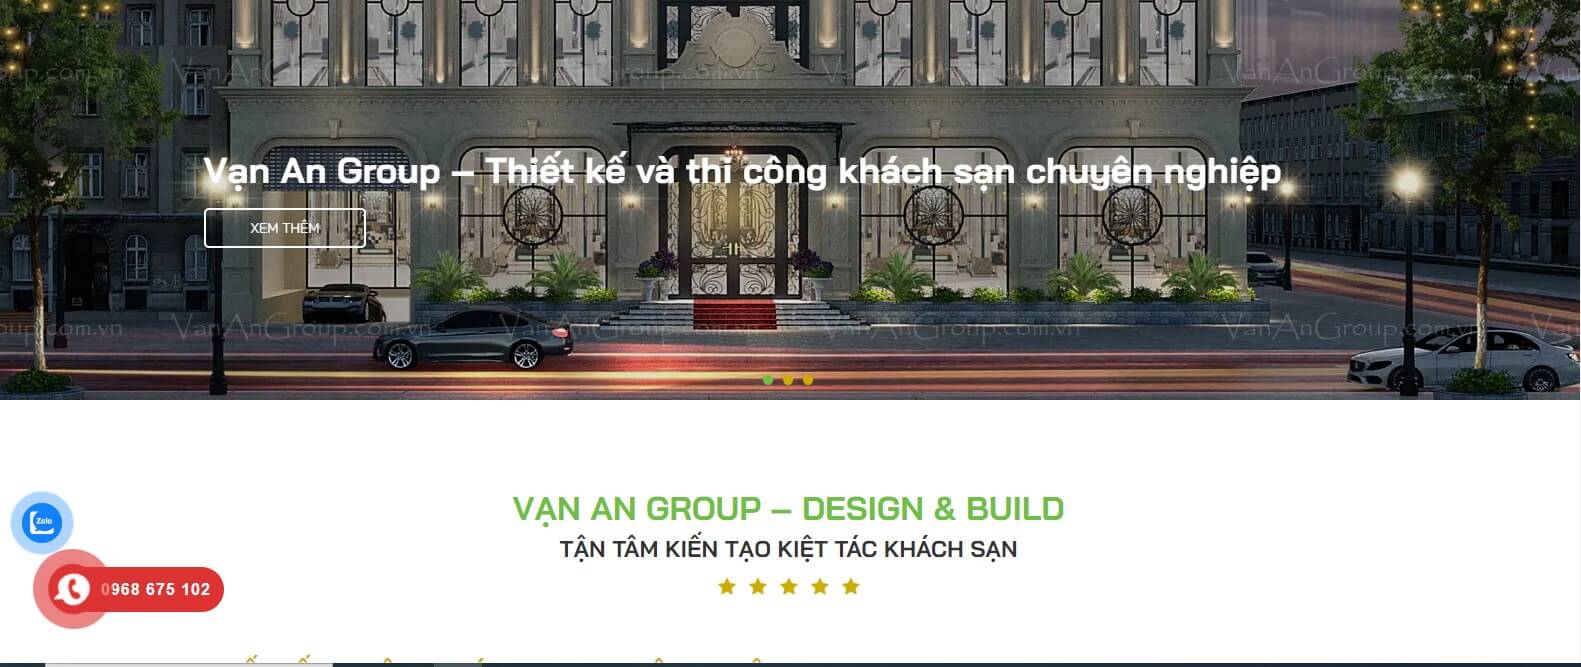 VẠN AN GROUP – DESIGN & BUILD TẬN TÂM KIẾN TẠO KIỆT TÁC KHÁCH SẠN